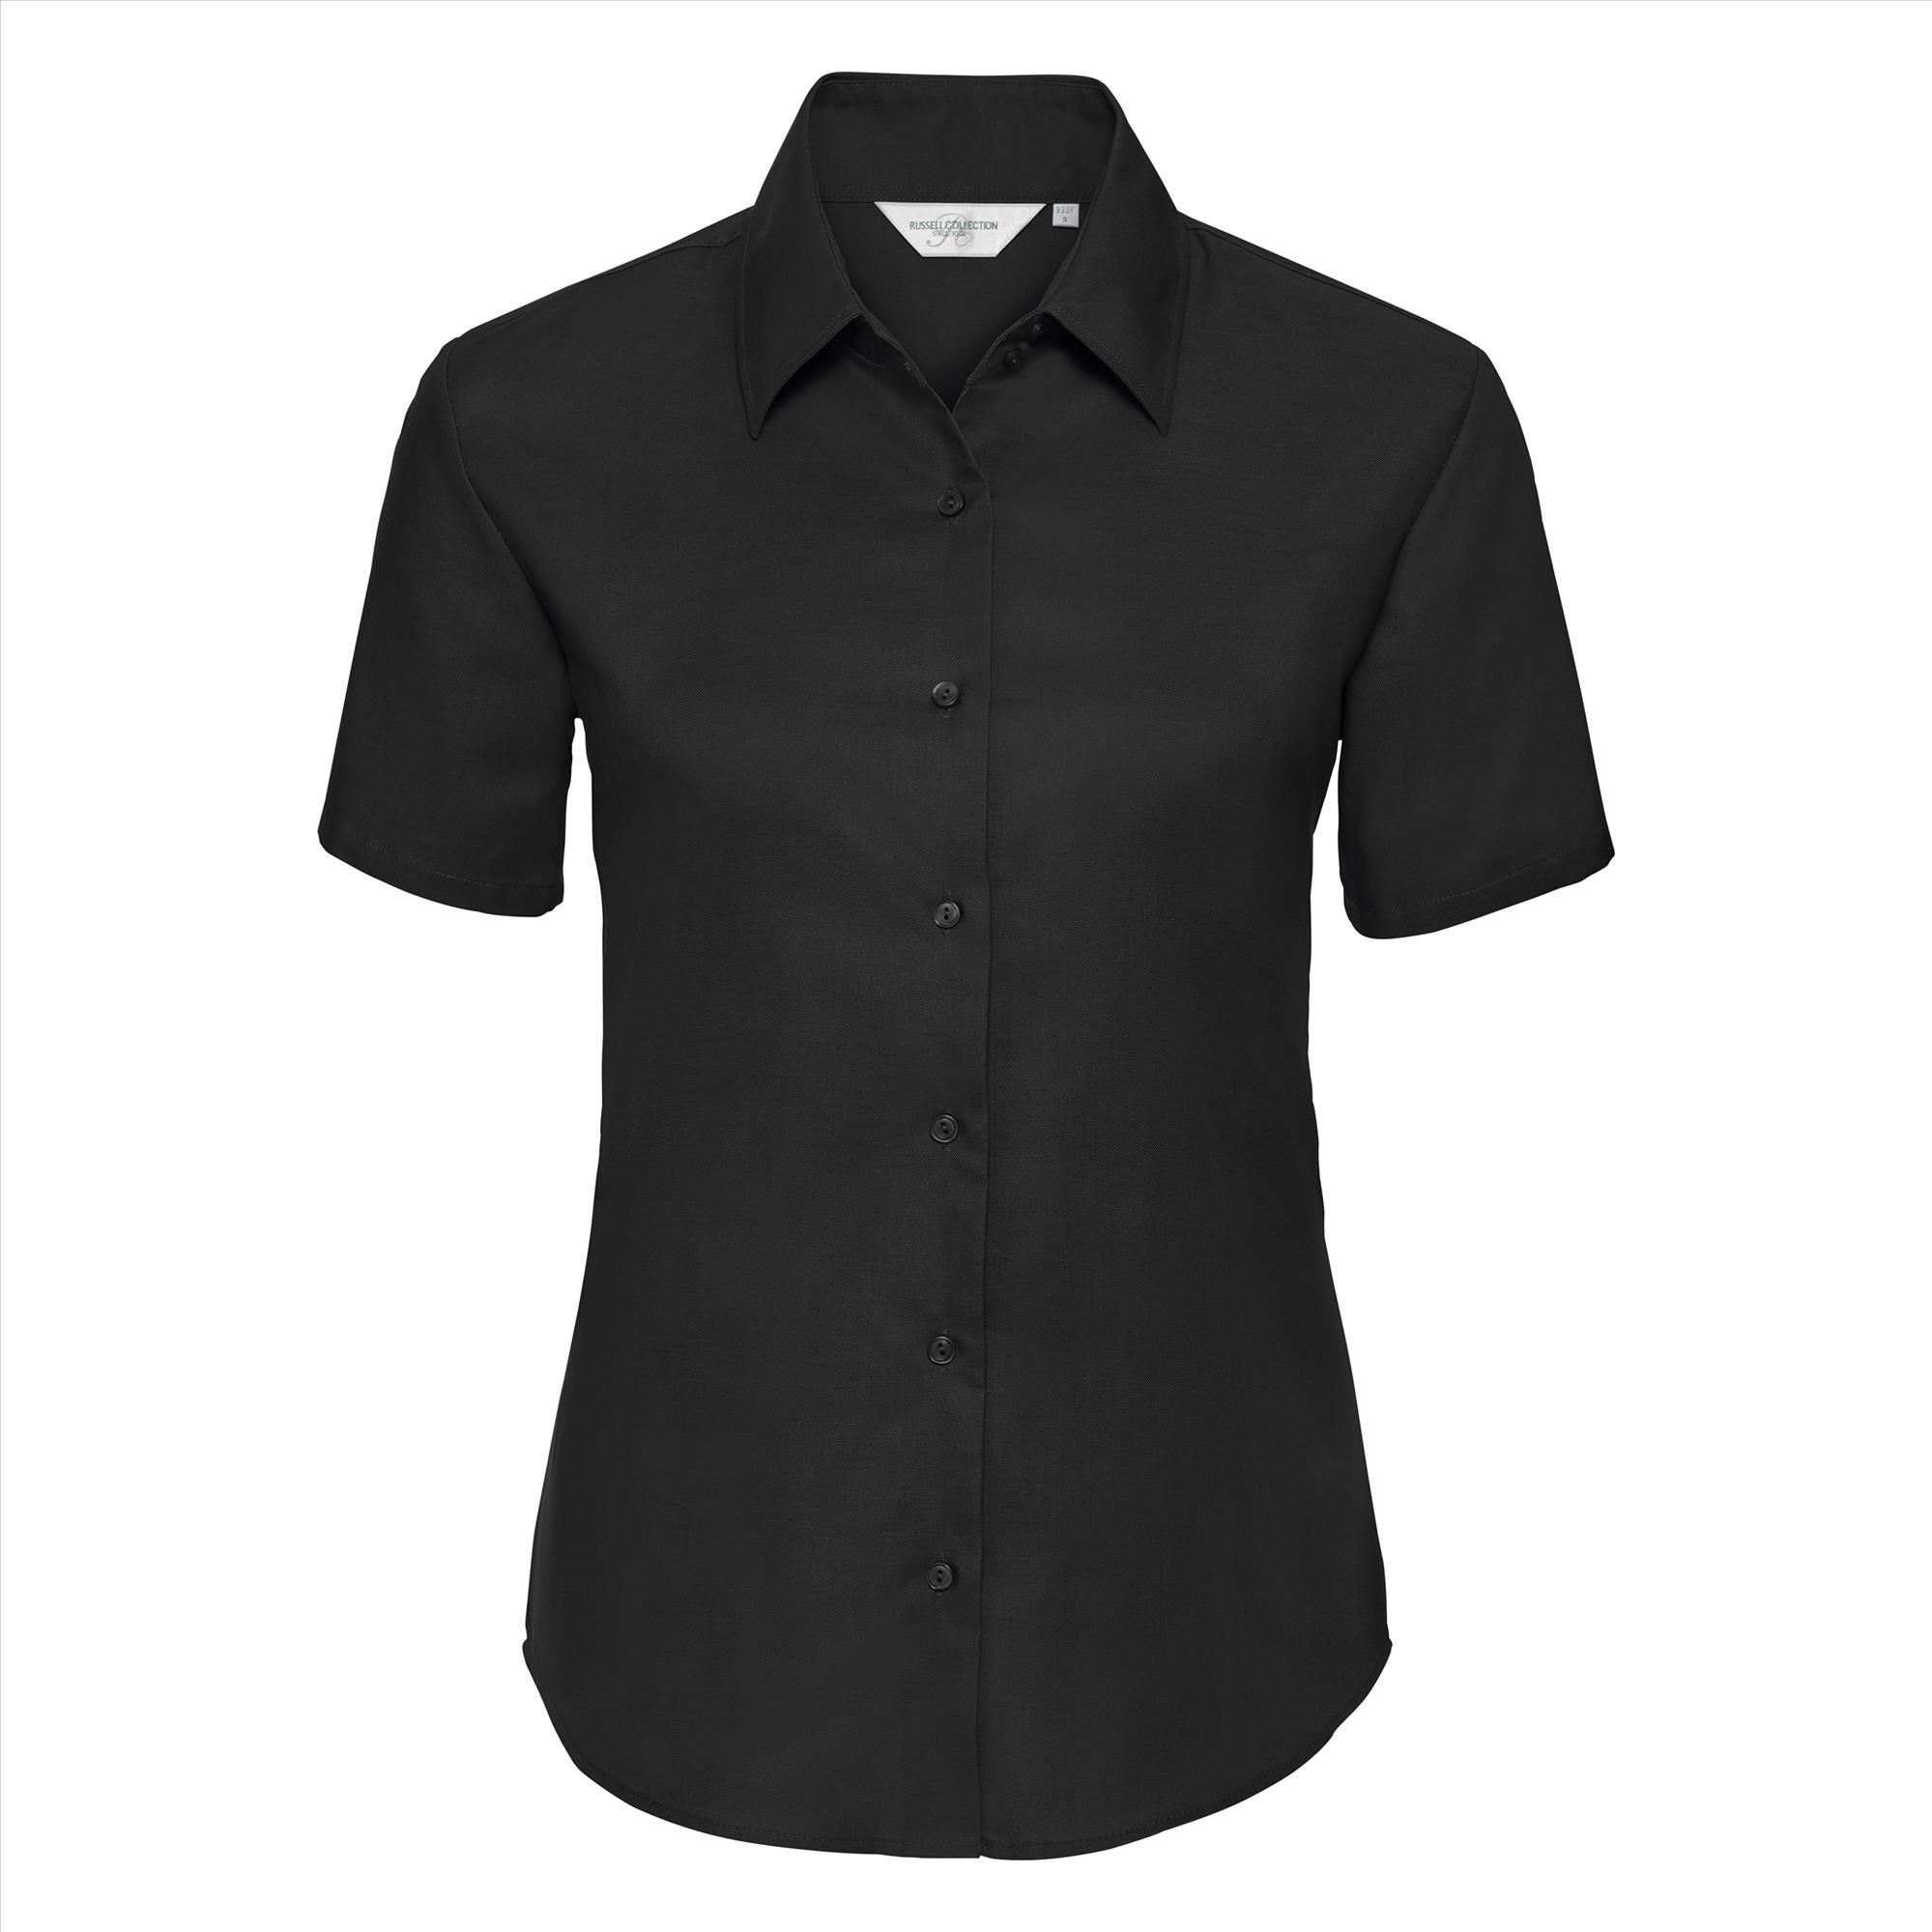 Getailleerde dames blouse zwart te personaliseren met en bedrijfslogo